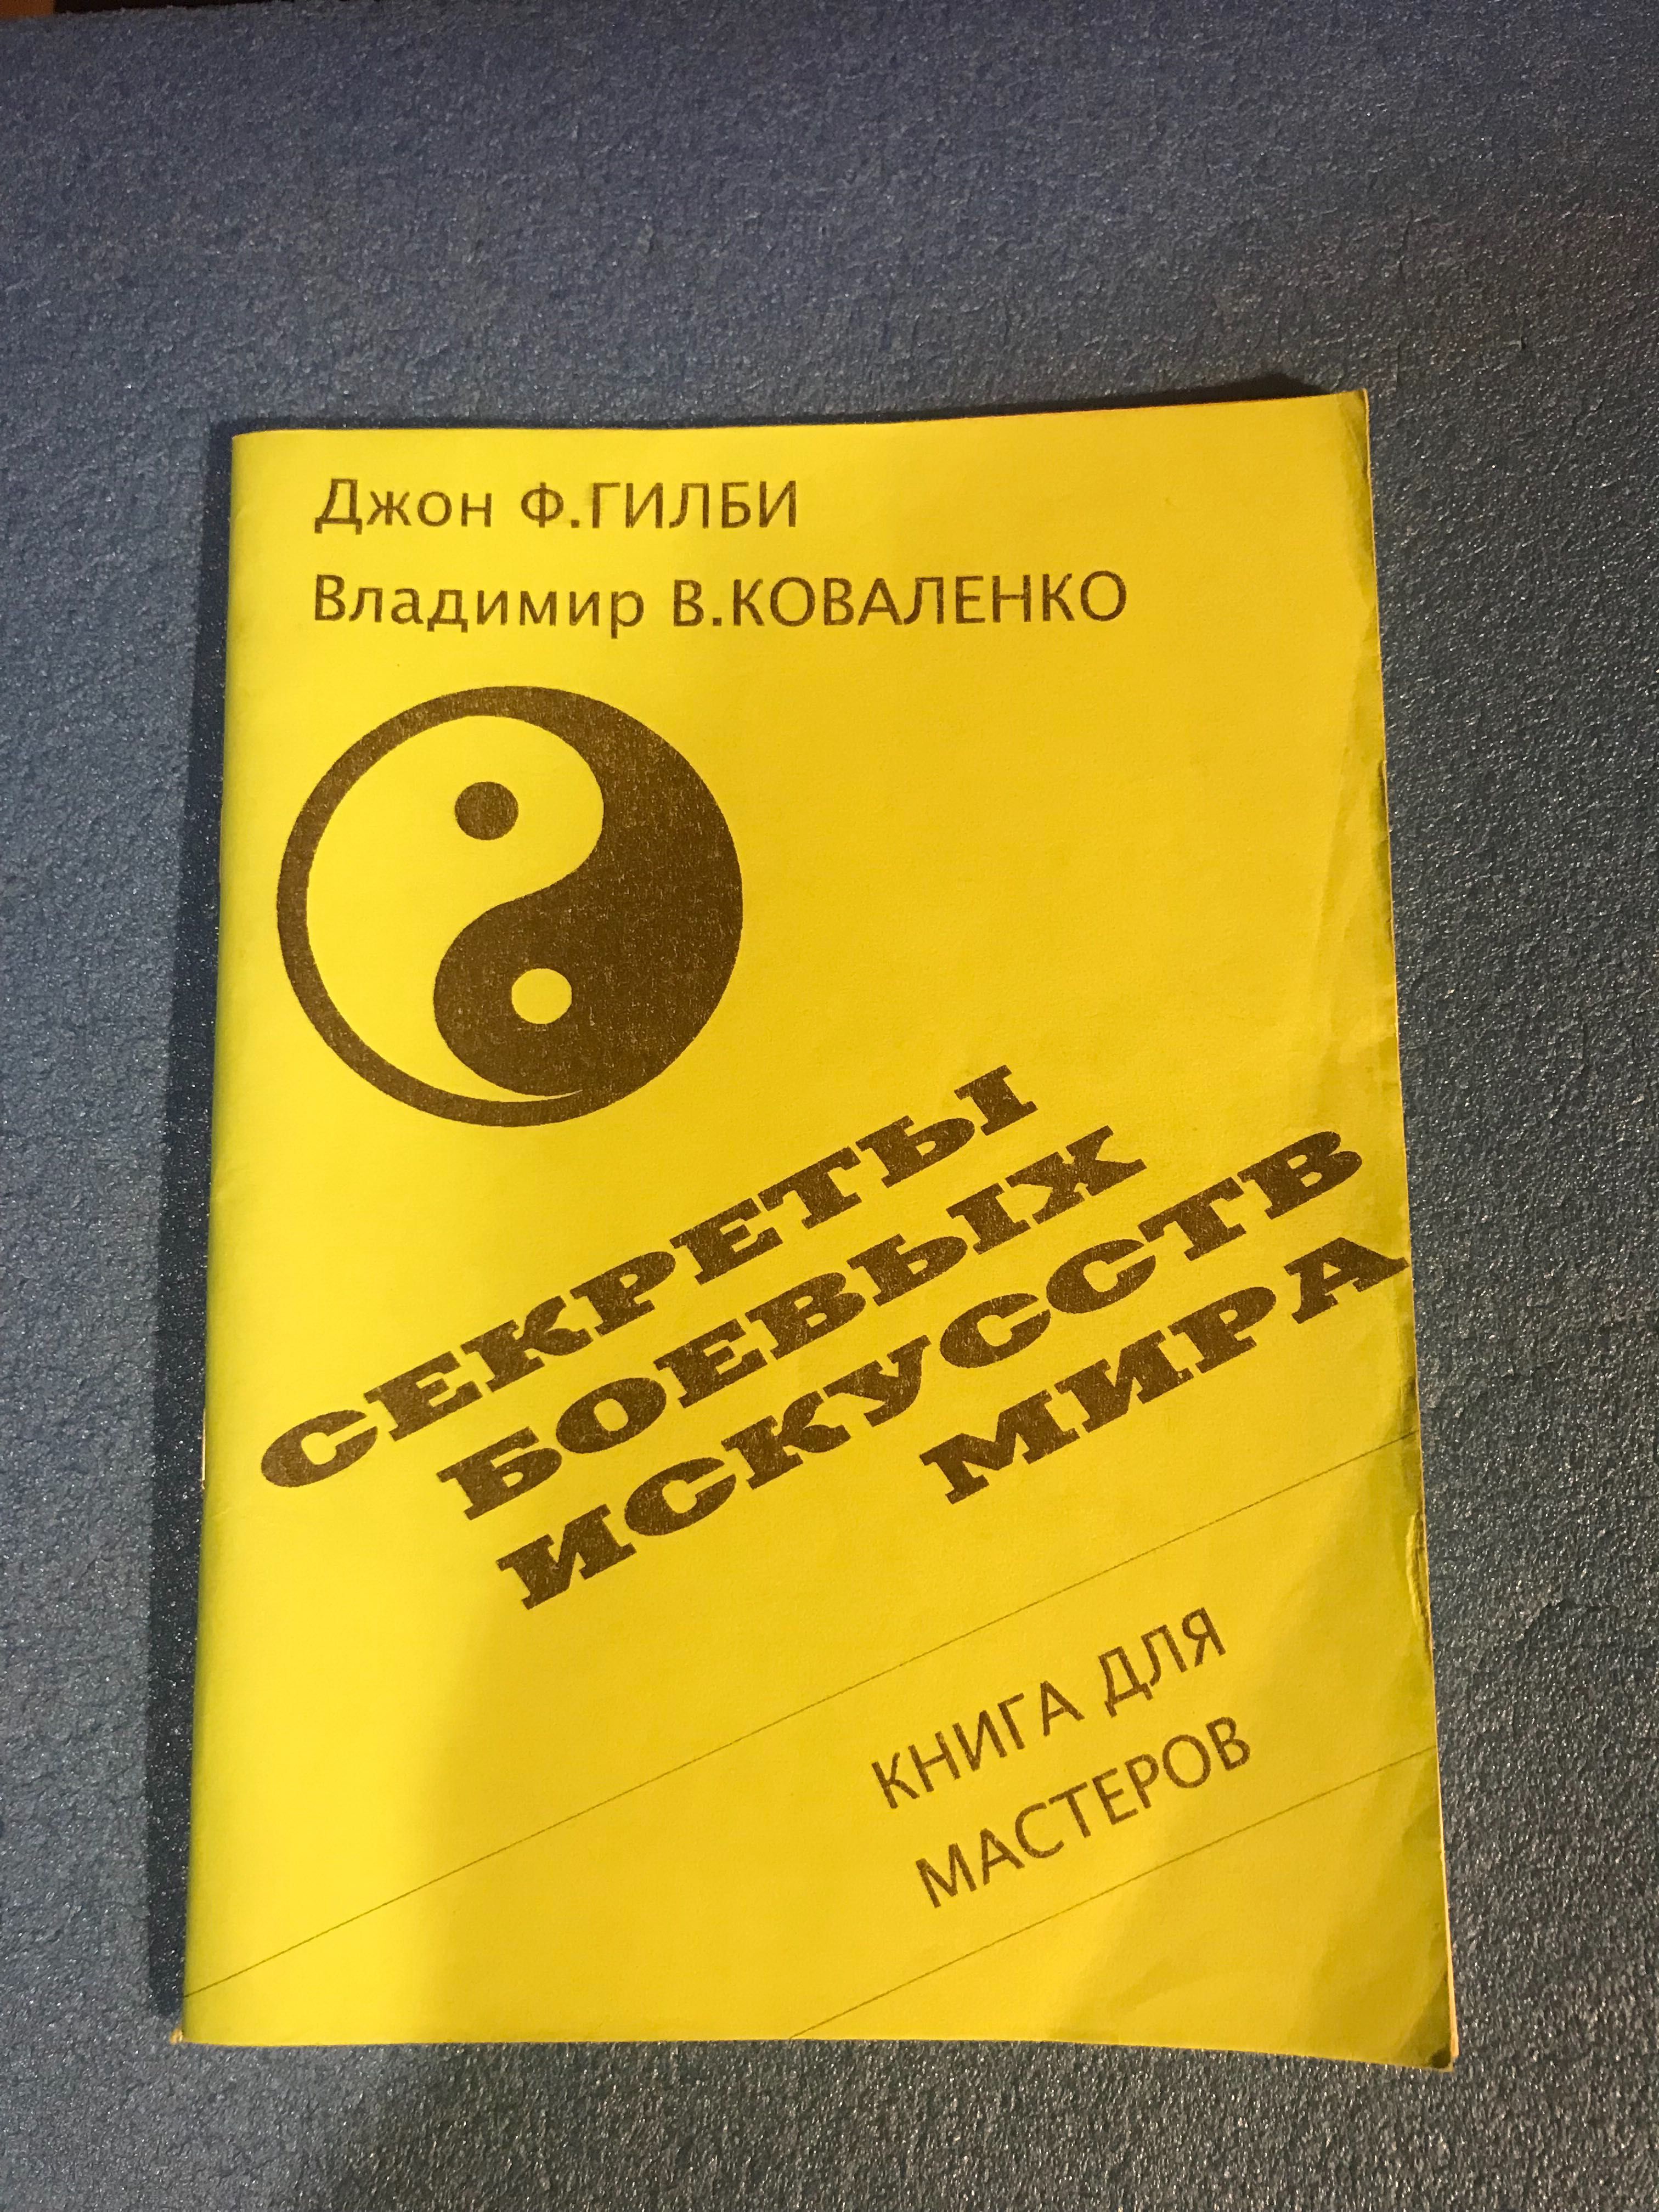 Джон Ф. Гилби, Владимир В. Коваленко «Секреты боевых искусств мира»